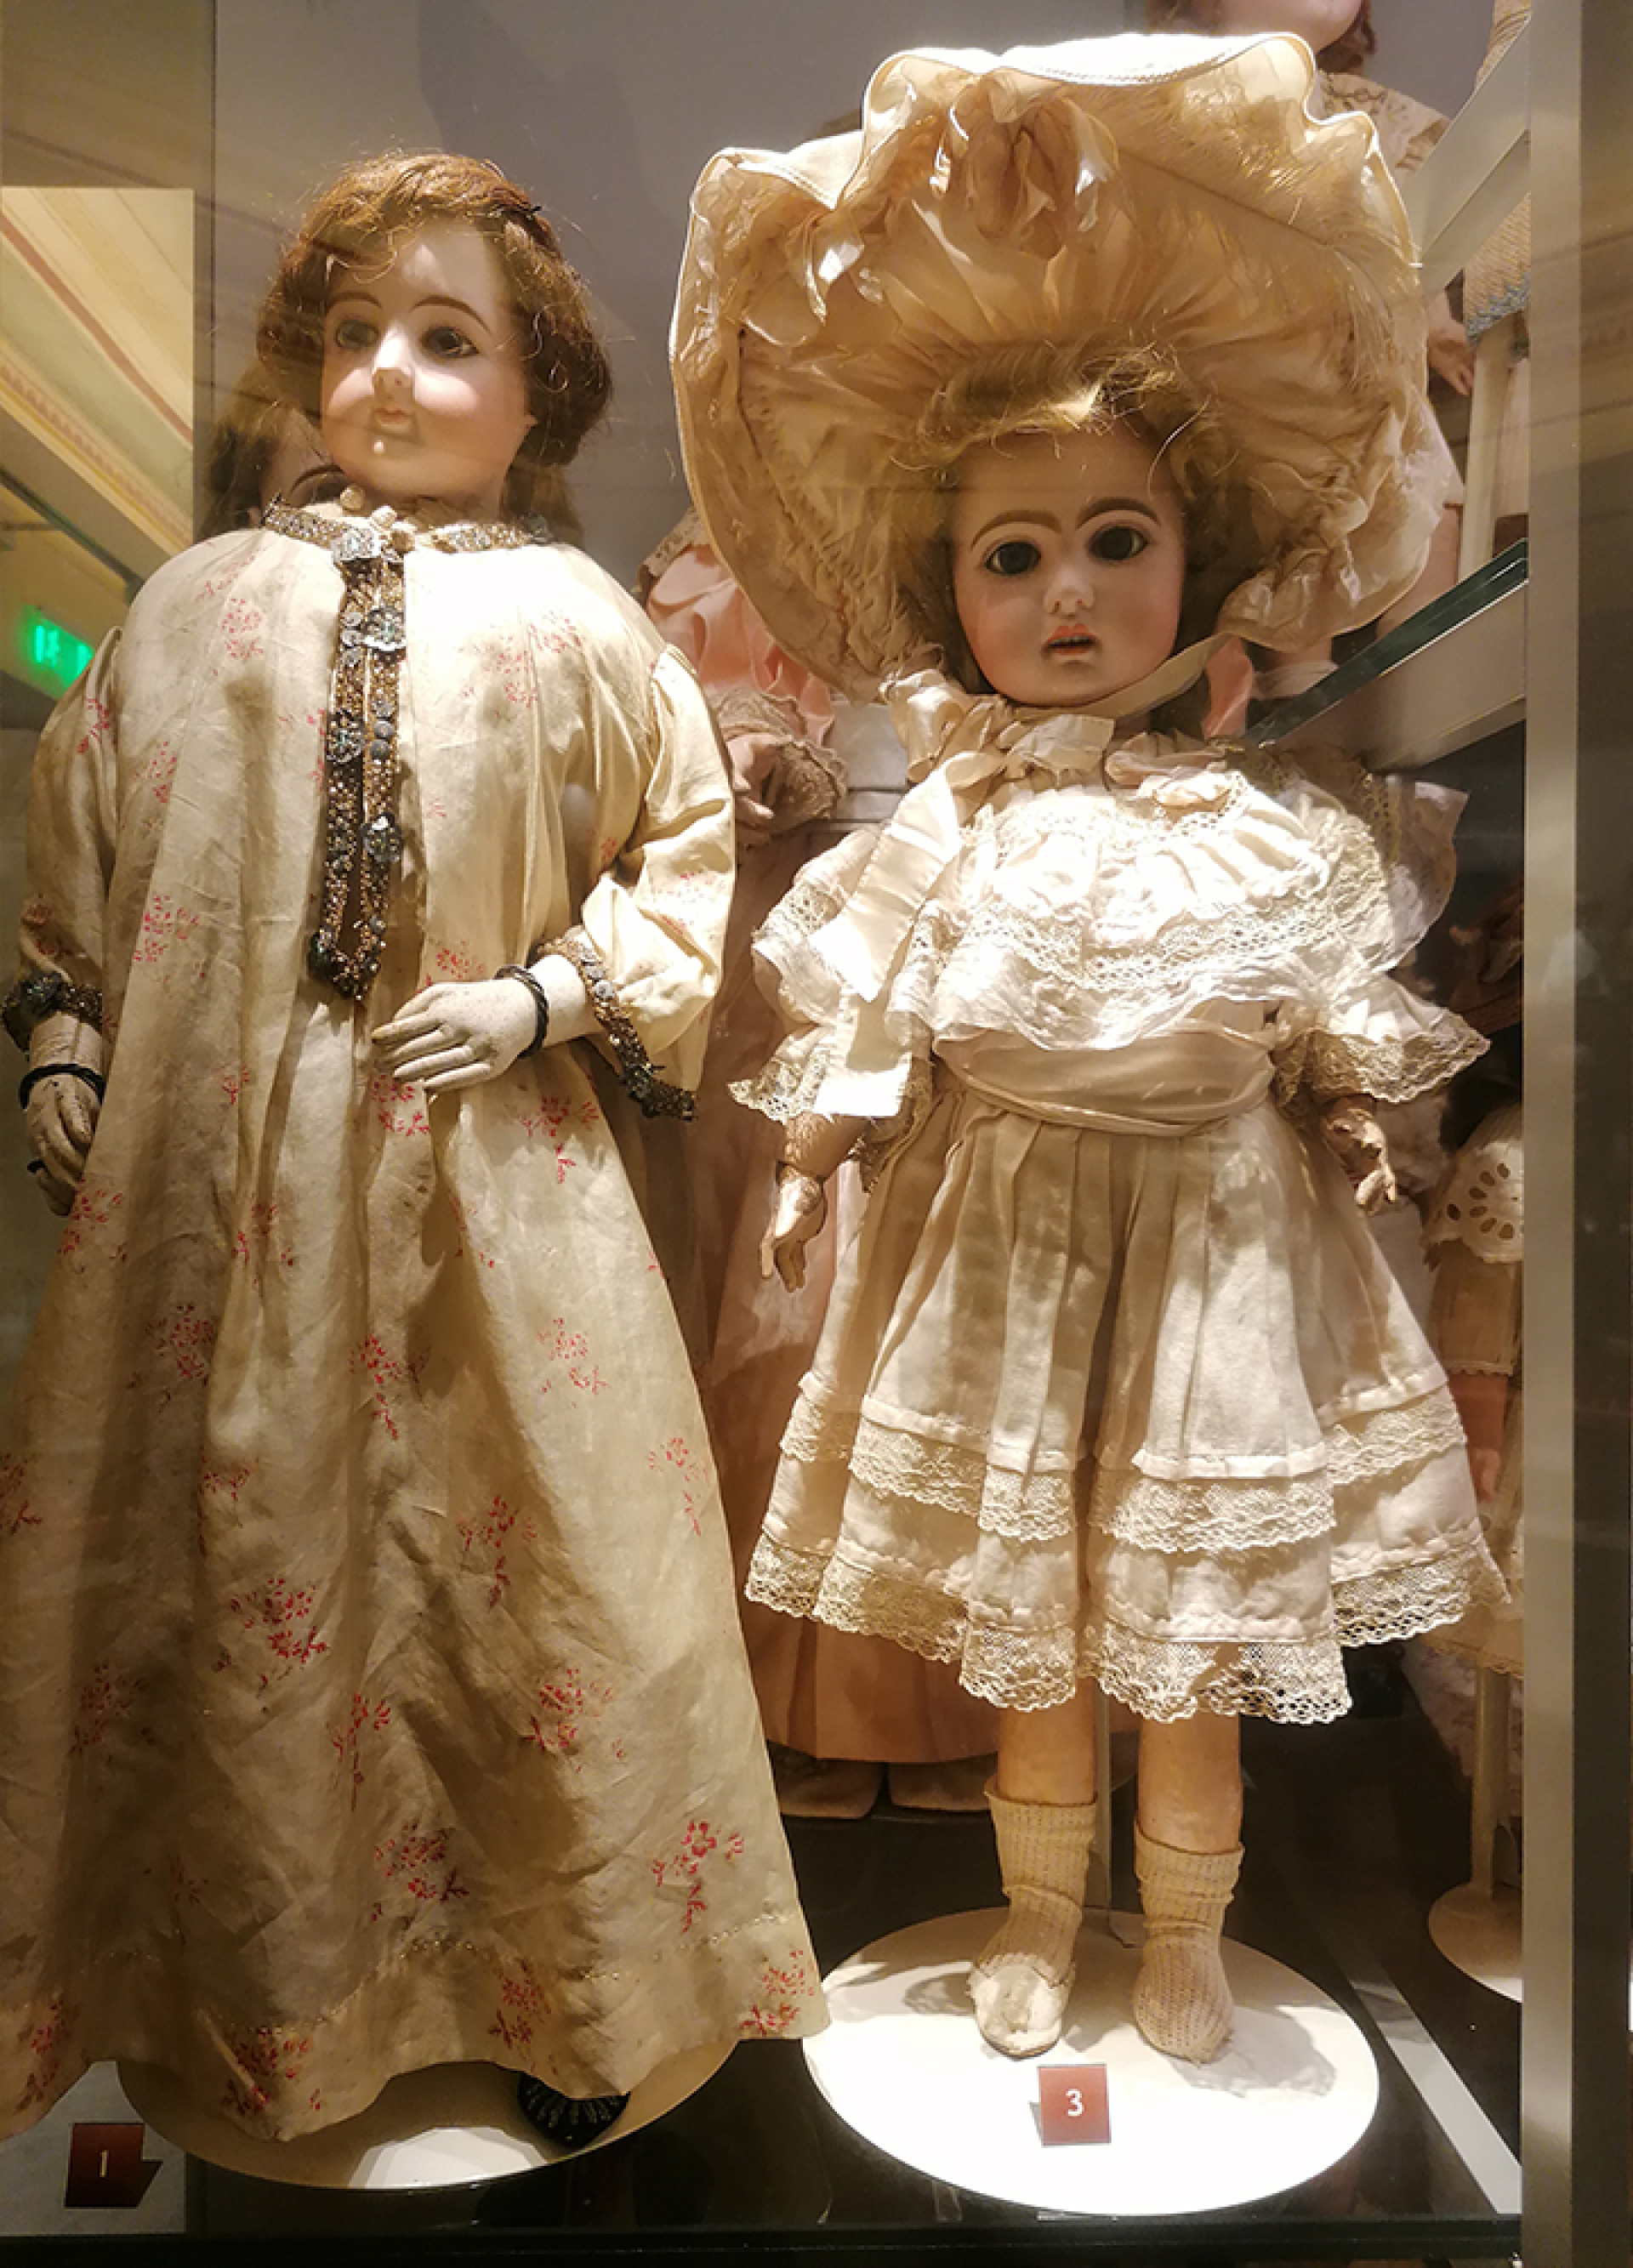 Αριστερά, Κούκλα μόδας, Γαλλία 1860.  Δεξιά, Πορσελάνινη κούκλα Child, 	Γαλλία, τέλος 19ου αιώνα